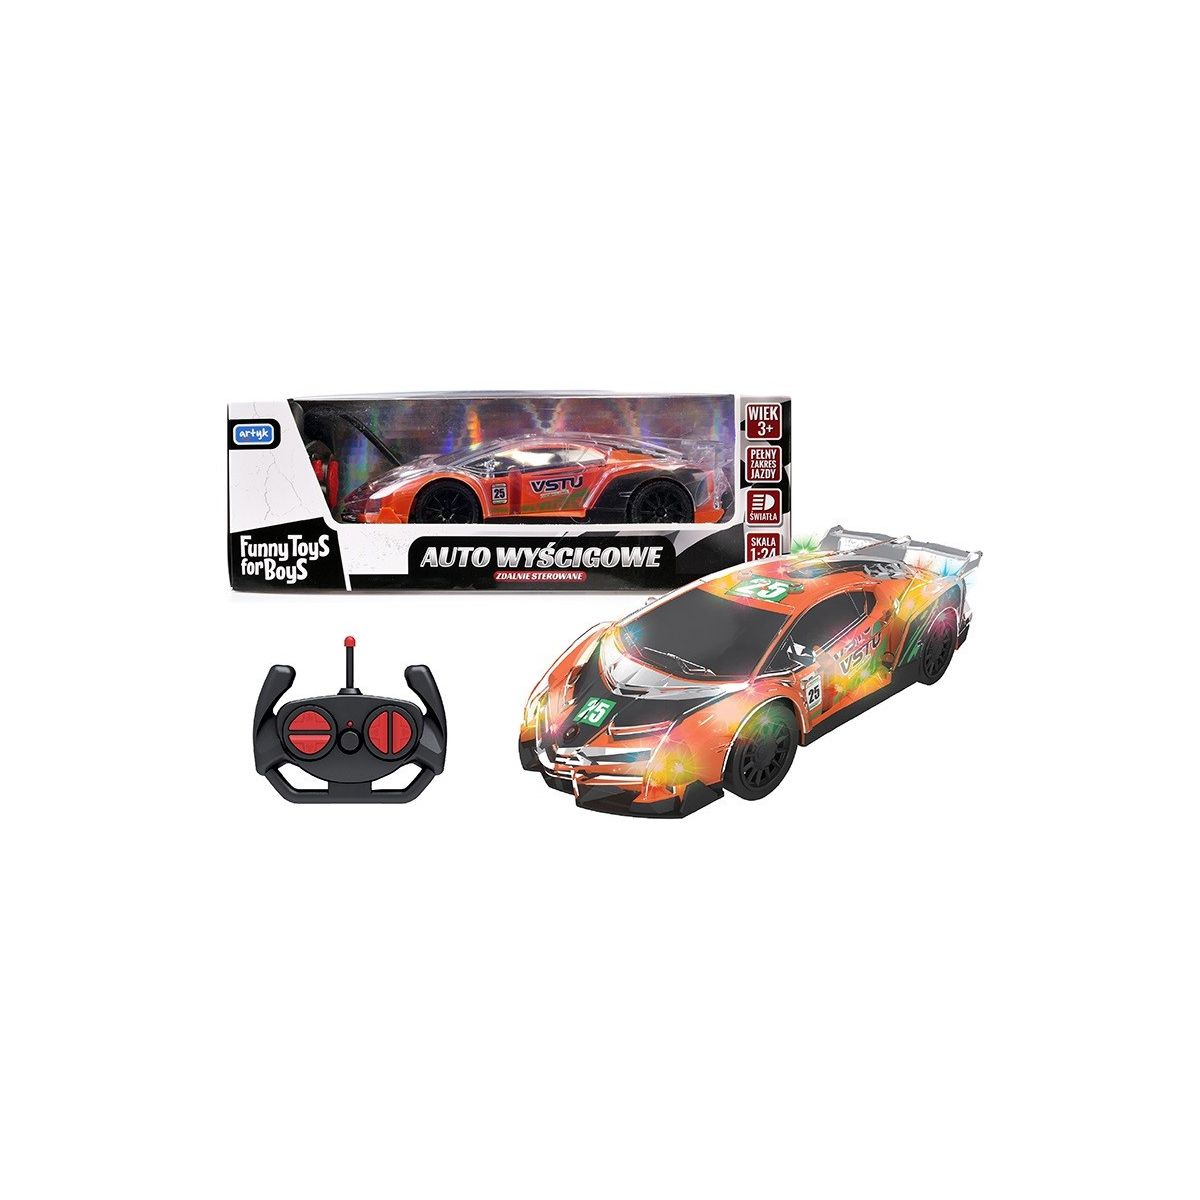 Samochód Toys for Boys wyścigowy zdalnie sterowany Artyk (127861)